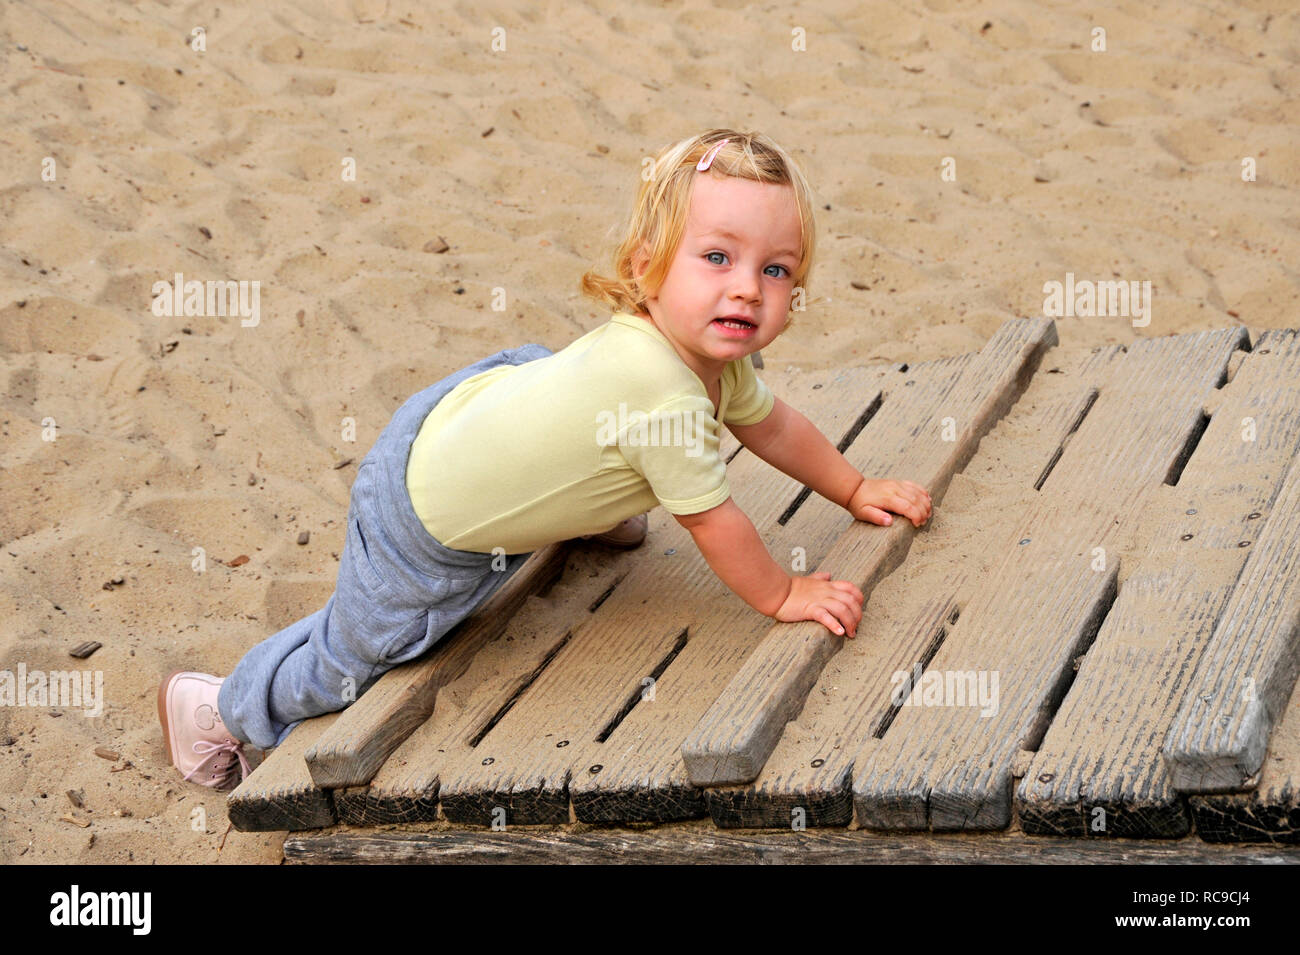 Kleines Mädchen, genre, 2 Jahre alt, auf dem Spielplatz | petit enfant, 2 ans, sur une aire de jeux Banque D'Images